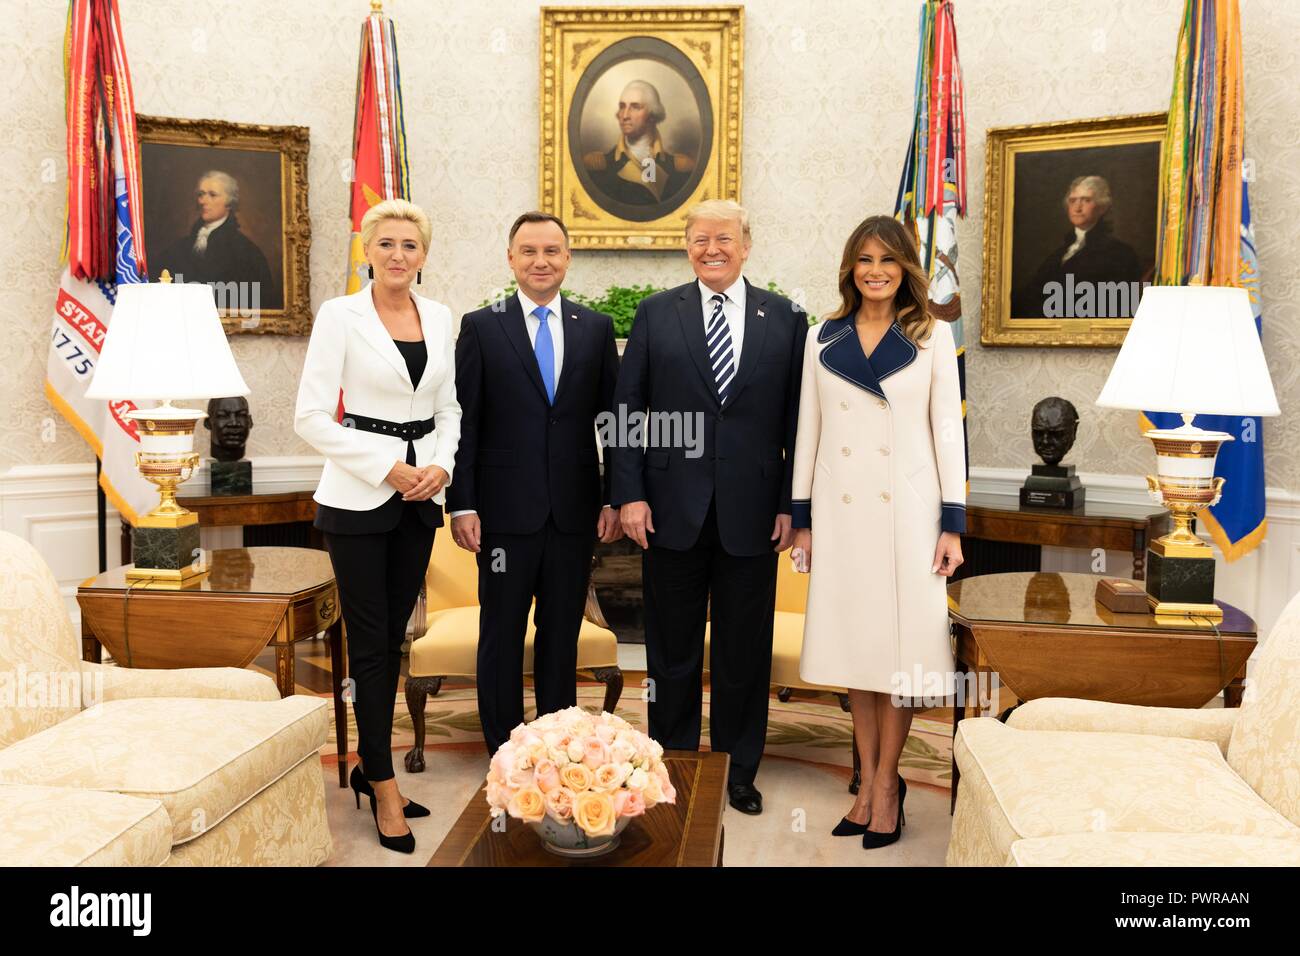 Président américain Donald Trump pose avec le président polonais Andrzej Duda, sa femme Kornhauser-Duda Agata, gauche, et de la Première Dame Melania Trump, droit, lors d'une réunion bilatérale dans le bureau ovale de la Maison Blanche le 18 septembre 2018 à Washington, DC. Banque D'Images